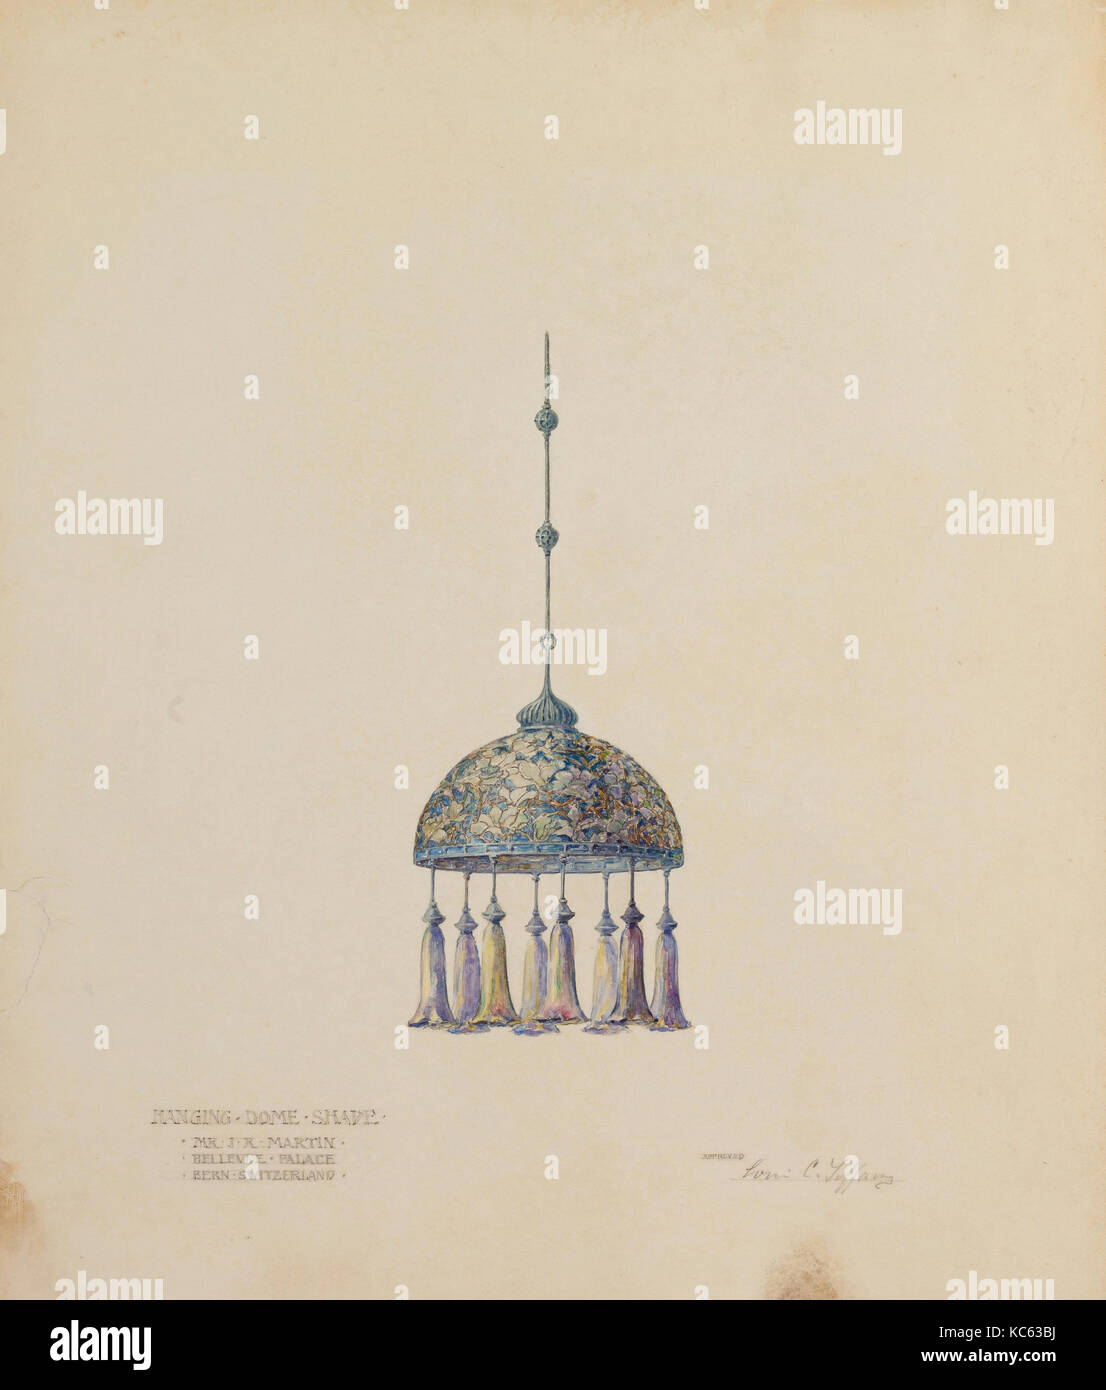 Zeichnung für hängende Dome Schatten, Tiffany Studios, 1905-15. Stockfoto